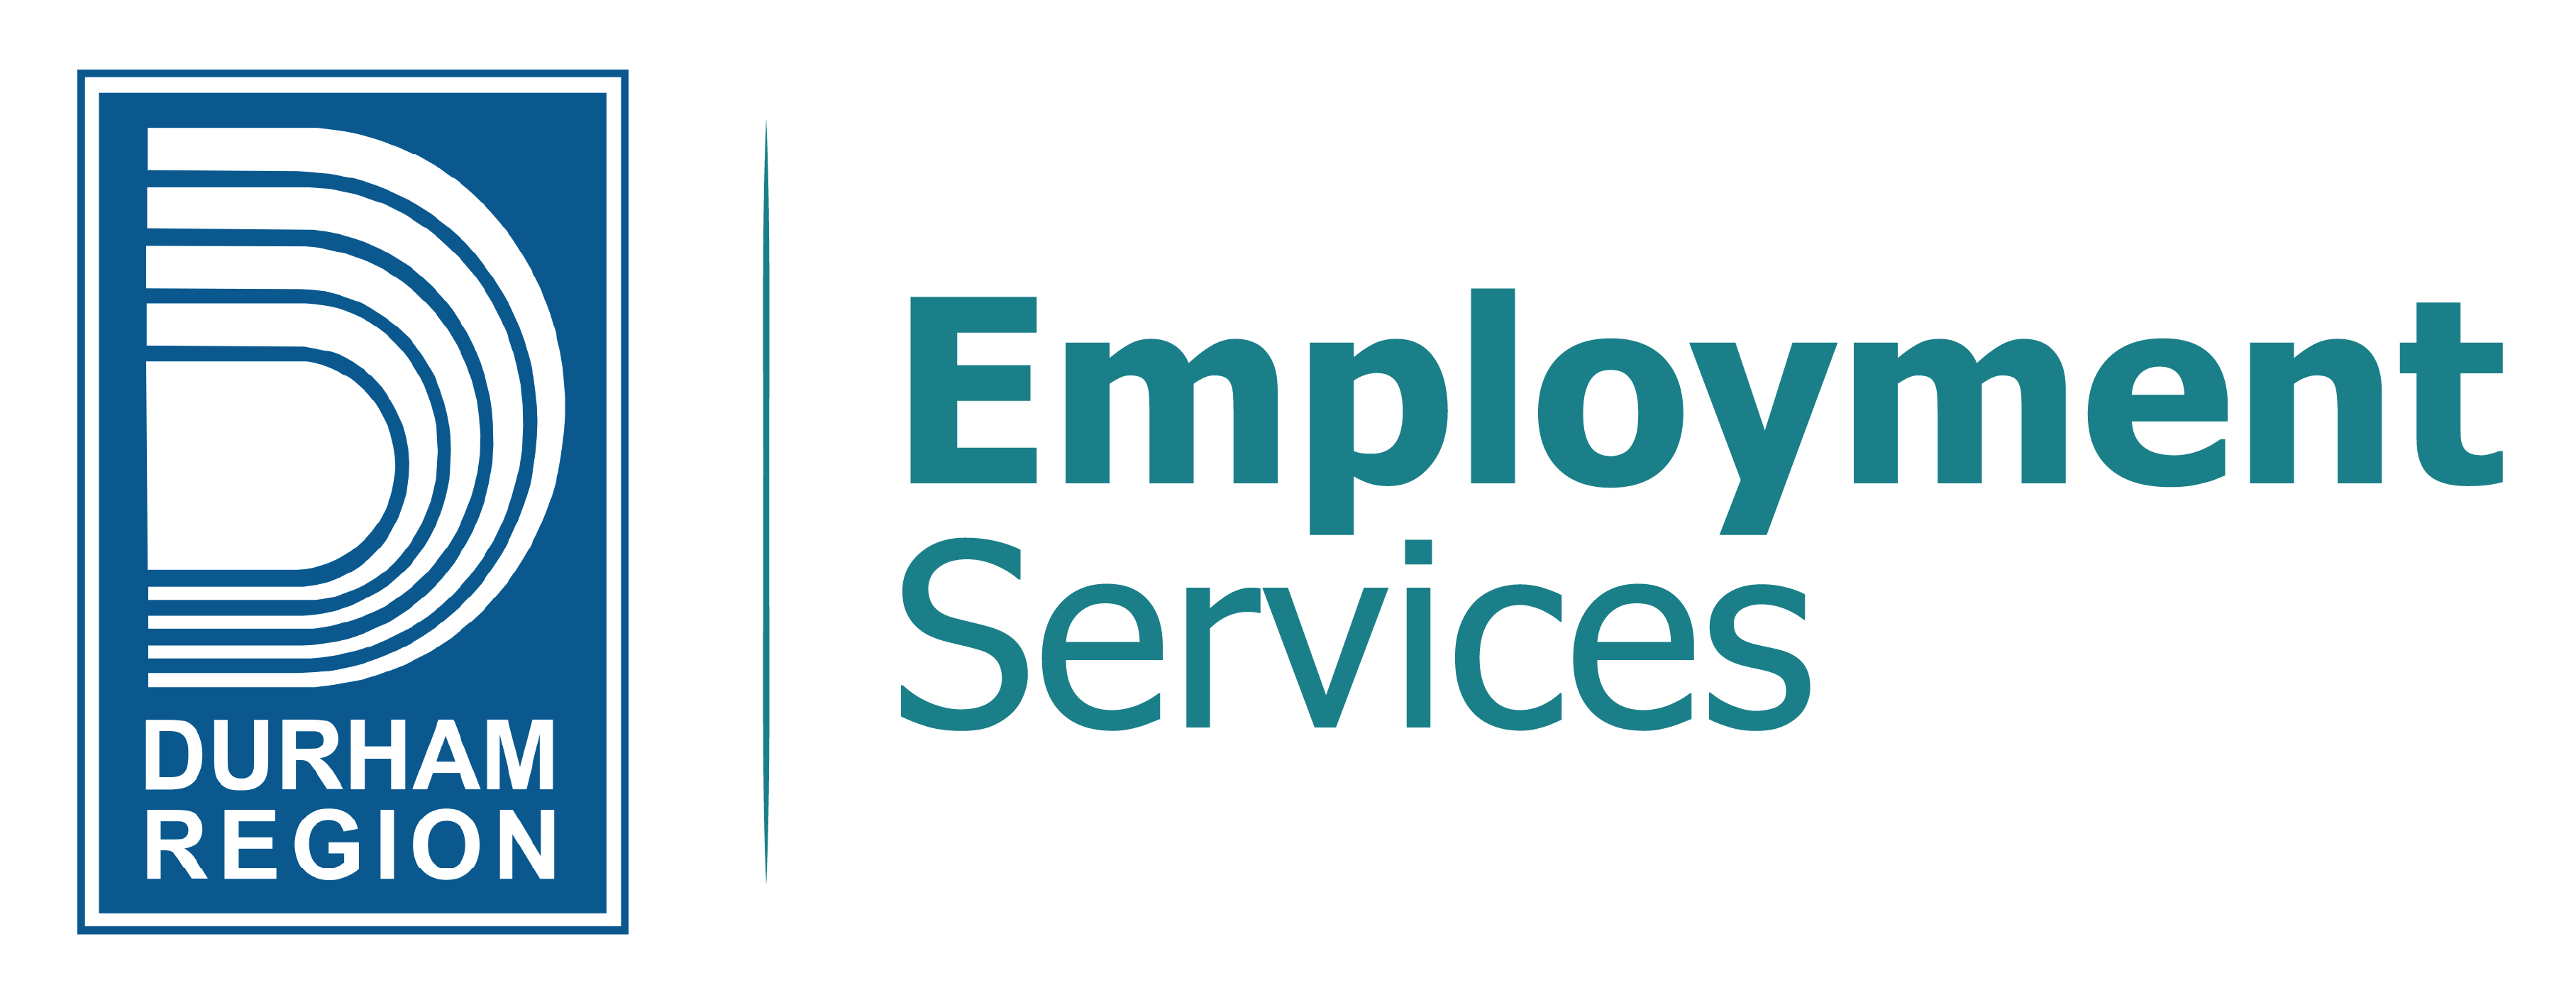 Durham Region Employment Services logo